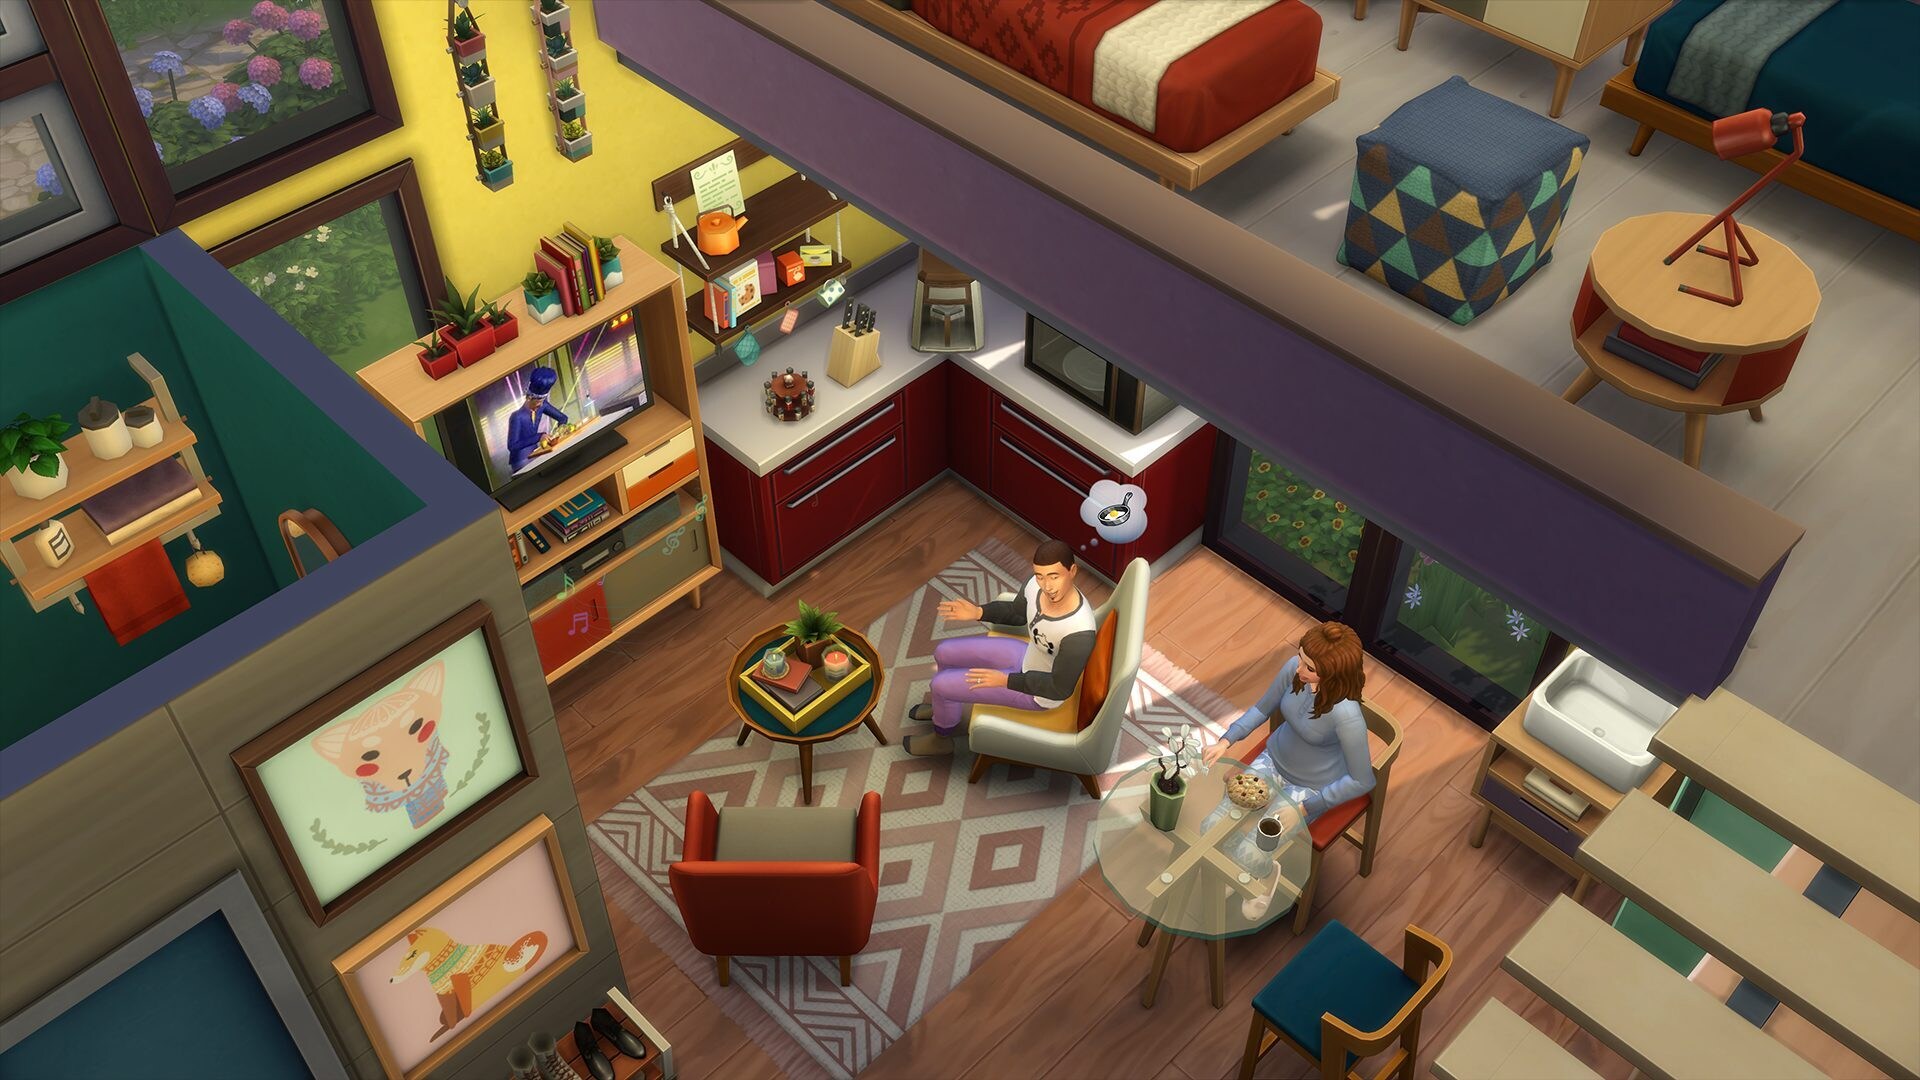 The Sims 4 Tiny Living Stuff (PC) - Origin Key - GLOBAL - 2